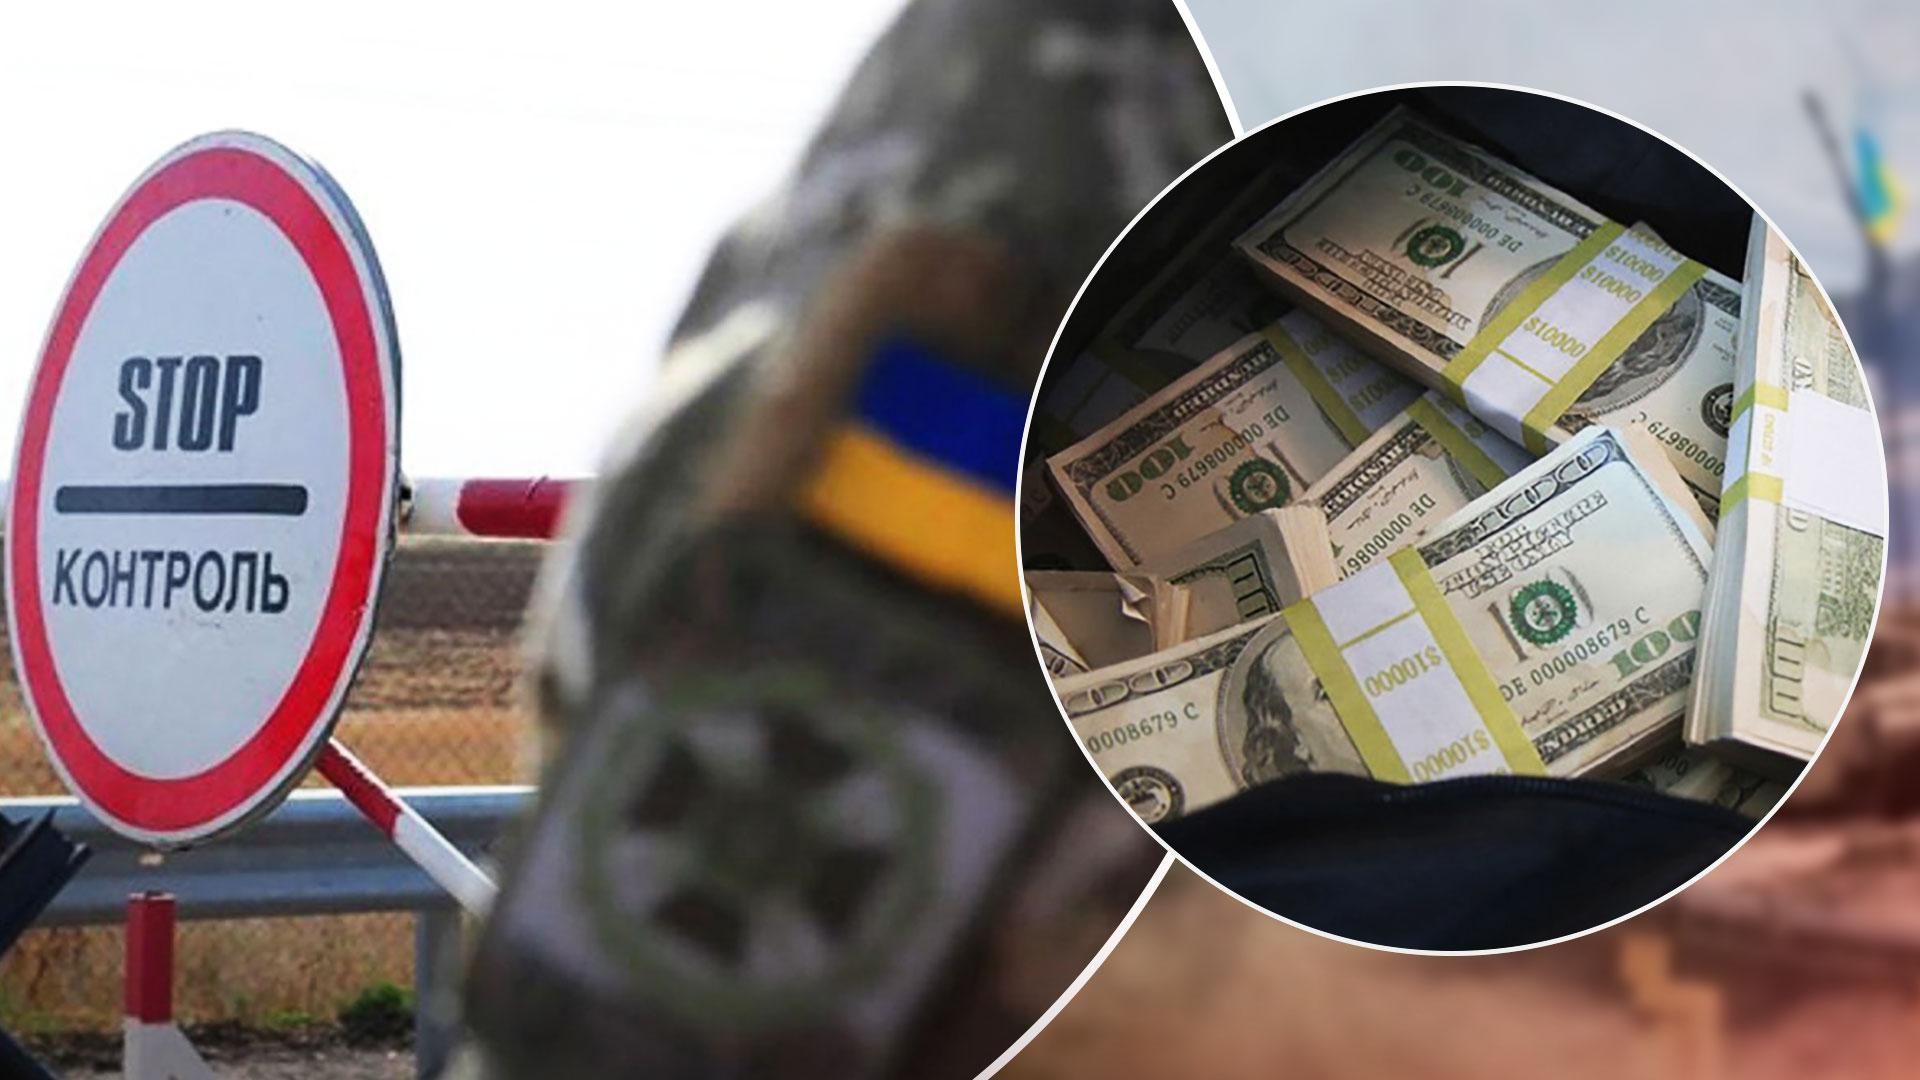 НАЗК зафіксувало вивезення незаконної готівки службовцями - Новини України